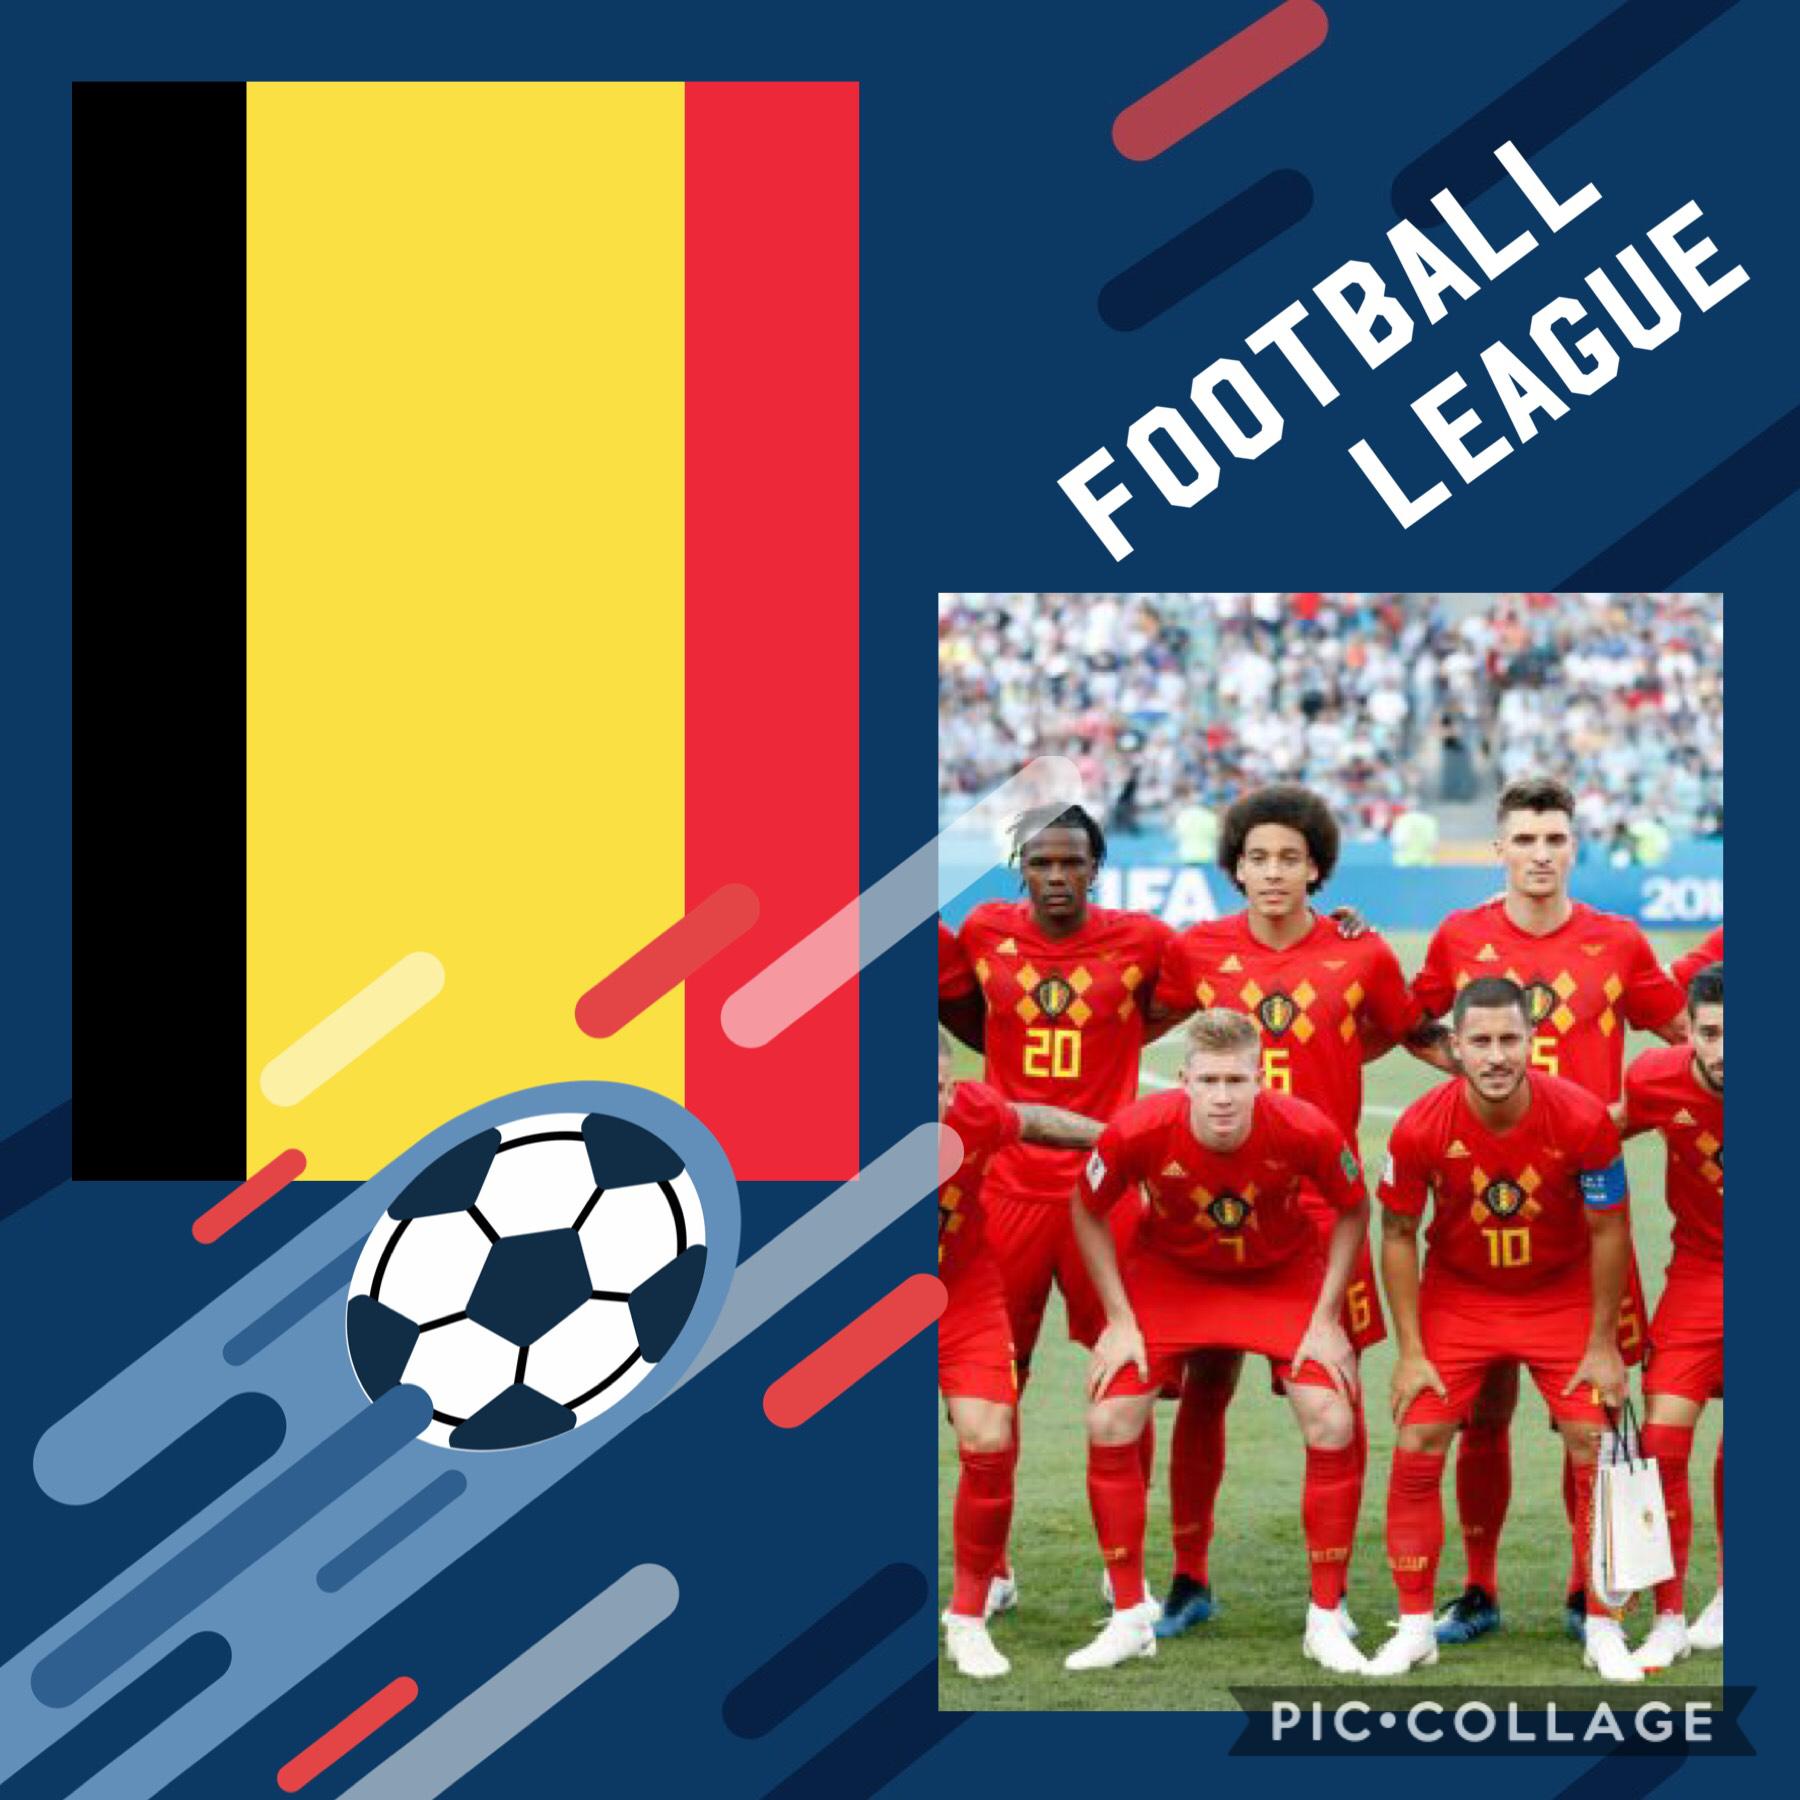 Go Belgium 